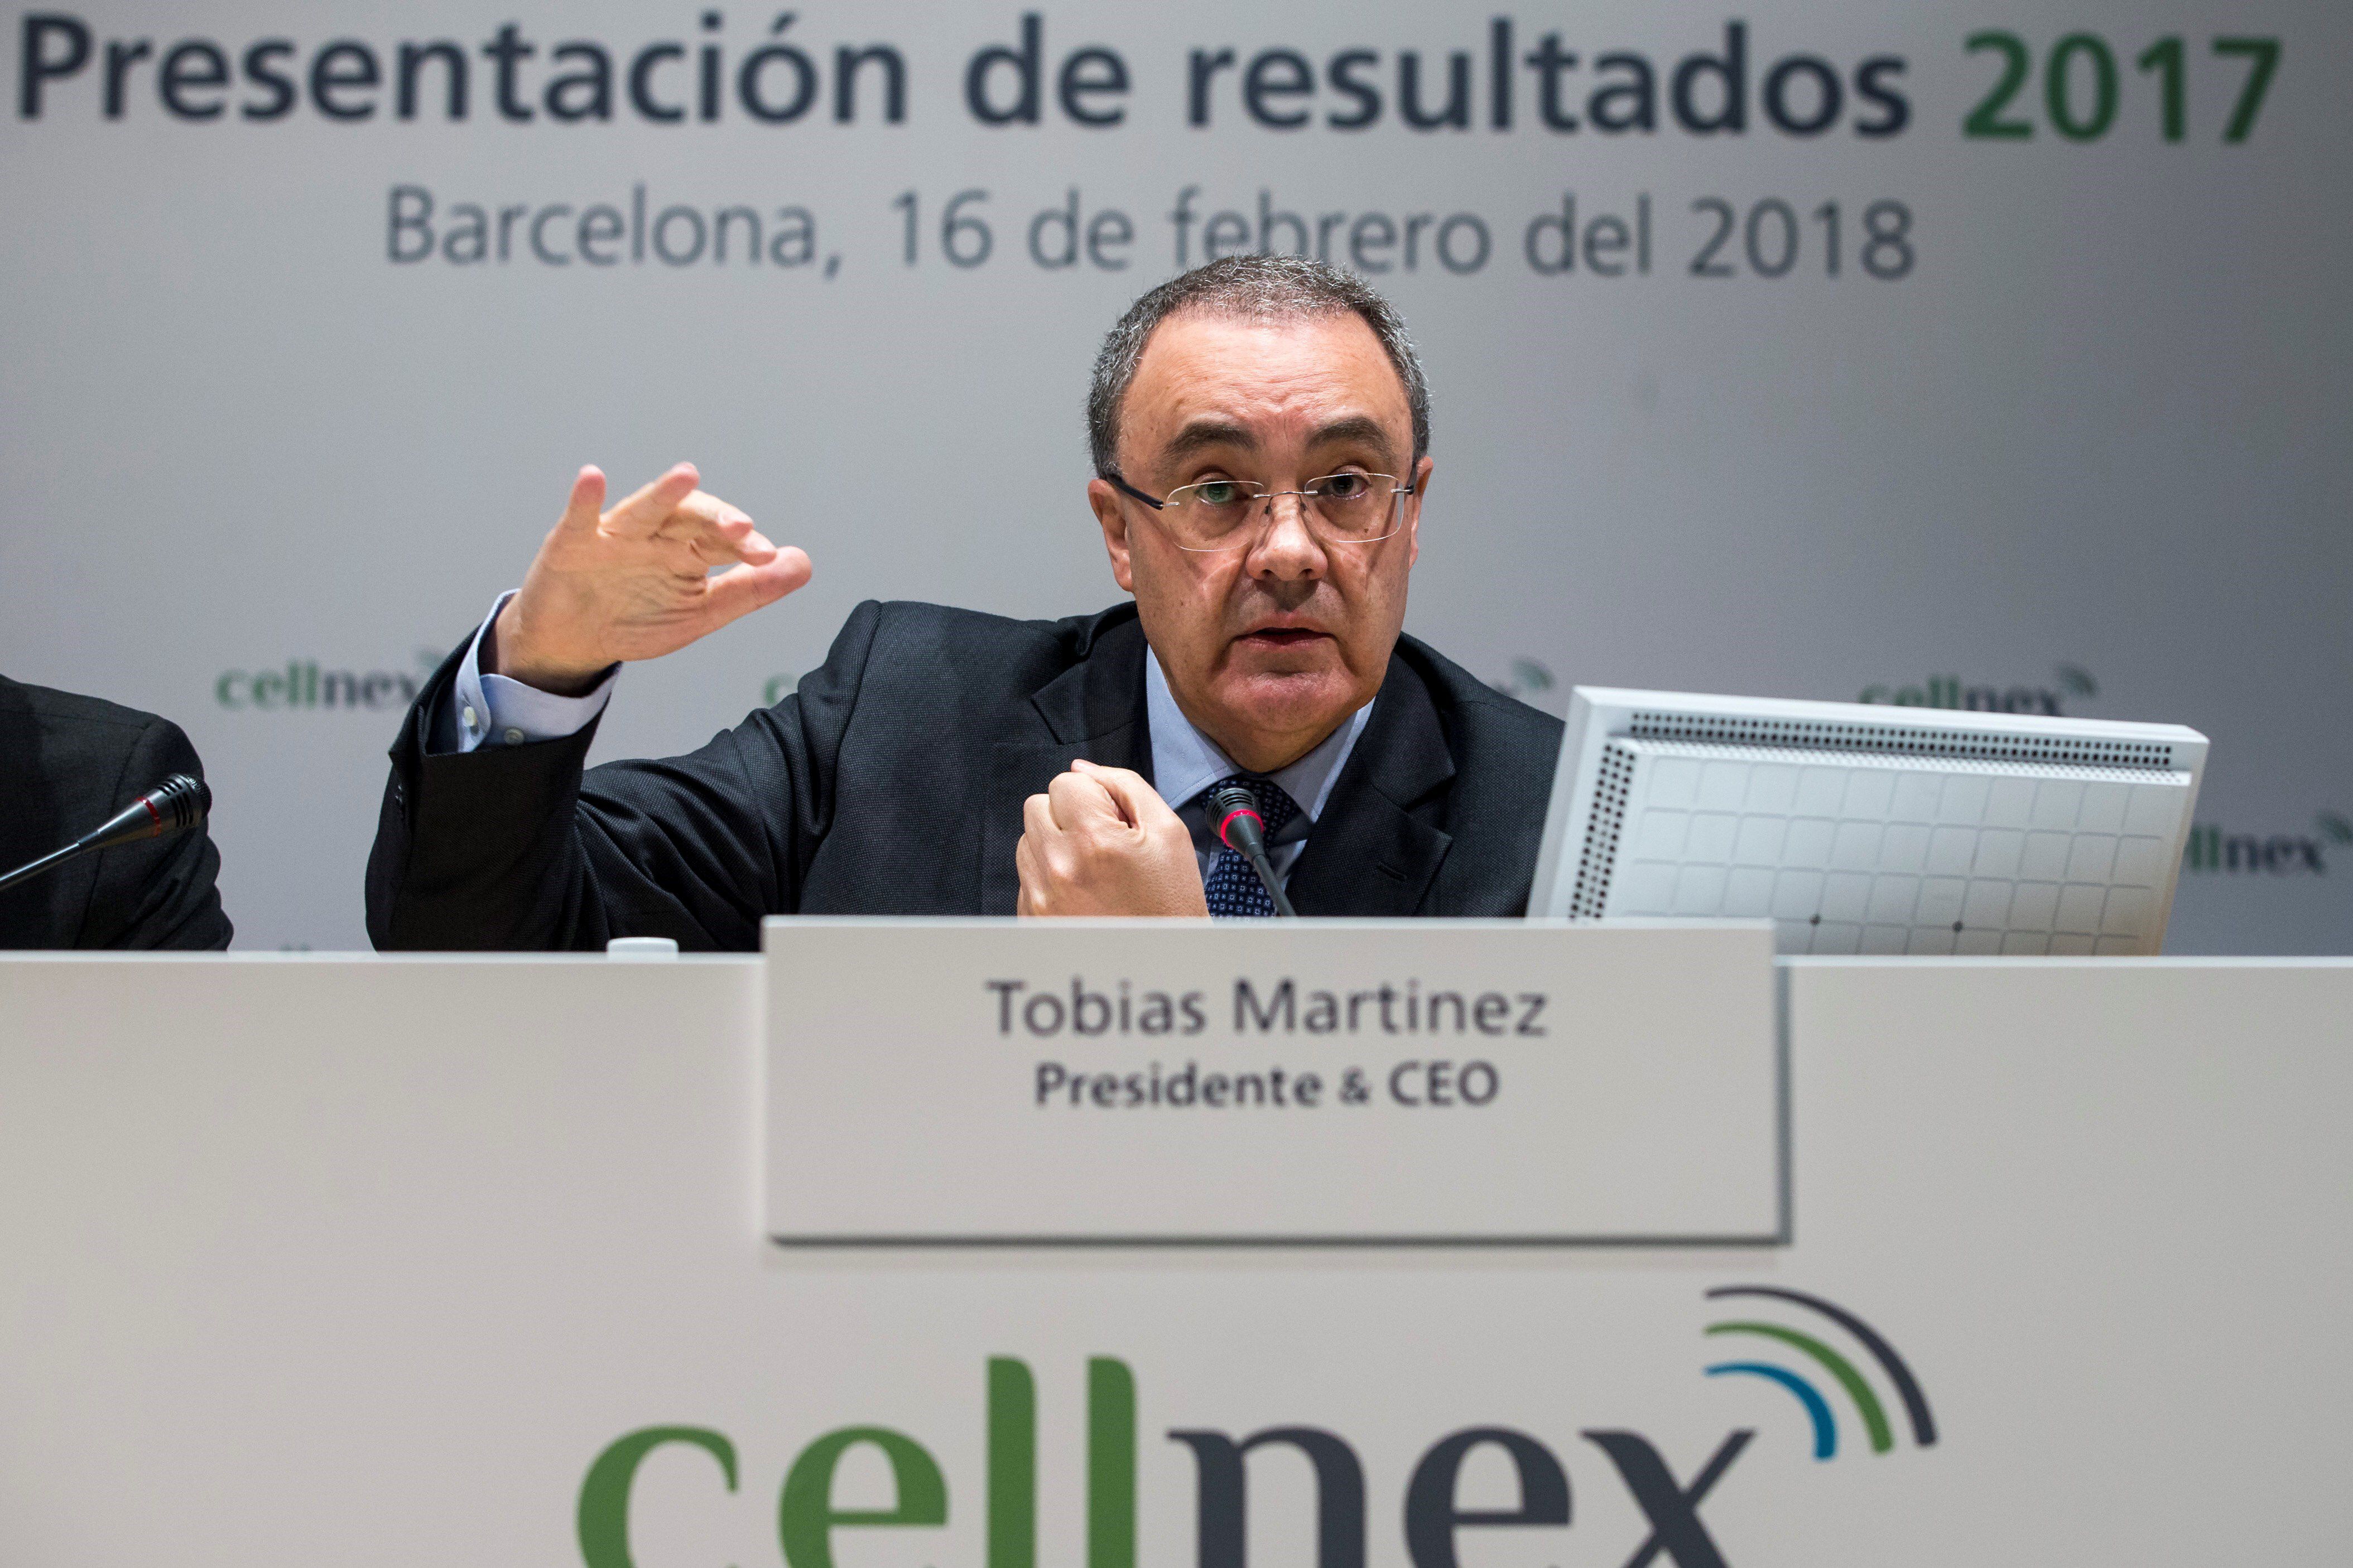 El presidente y consejero delegado de Cellnex, Tobías Martínez, en una presentación de resultados de la compañía. EFE/ Quique García/Archivo 